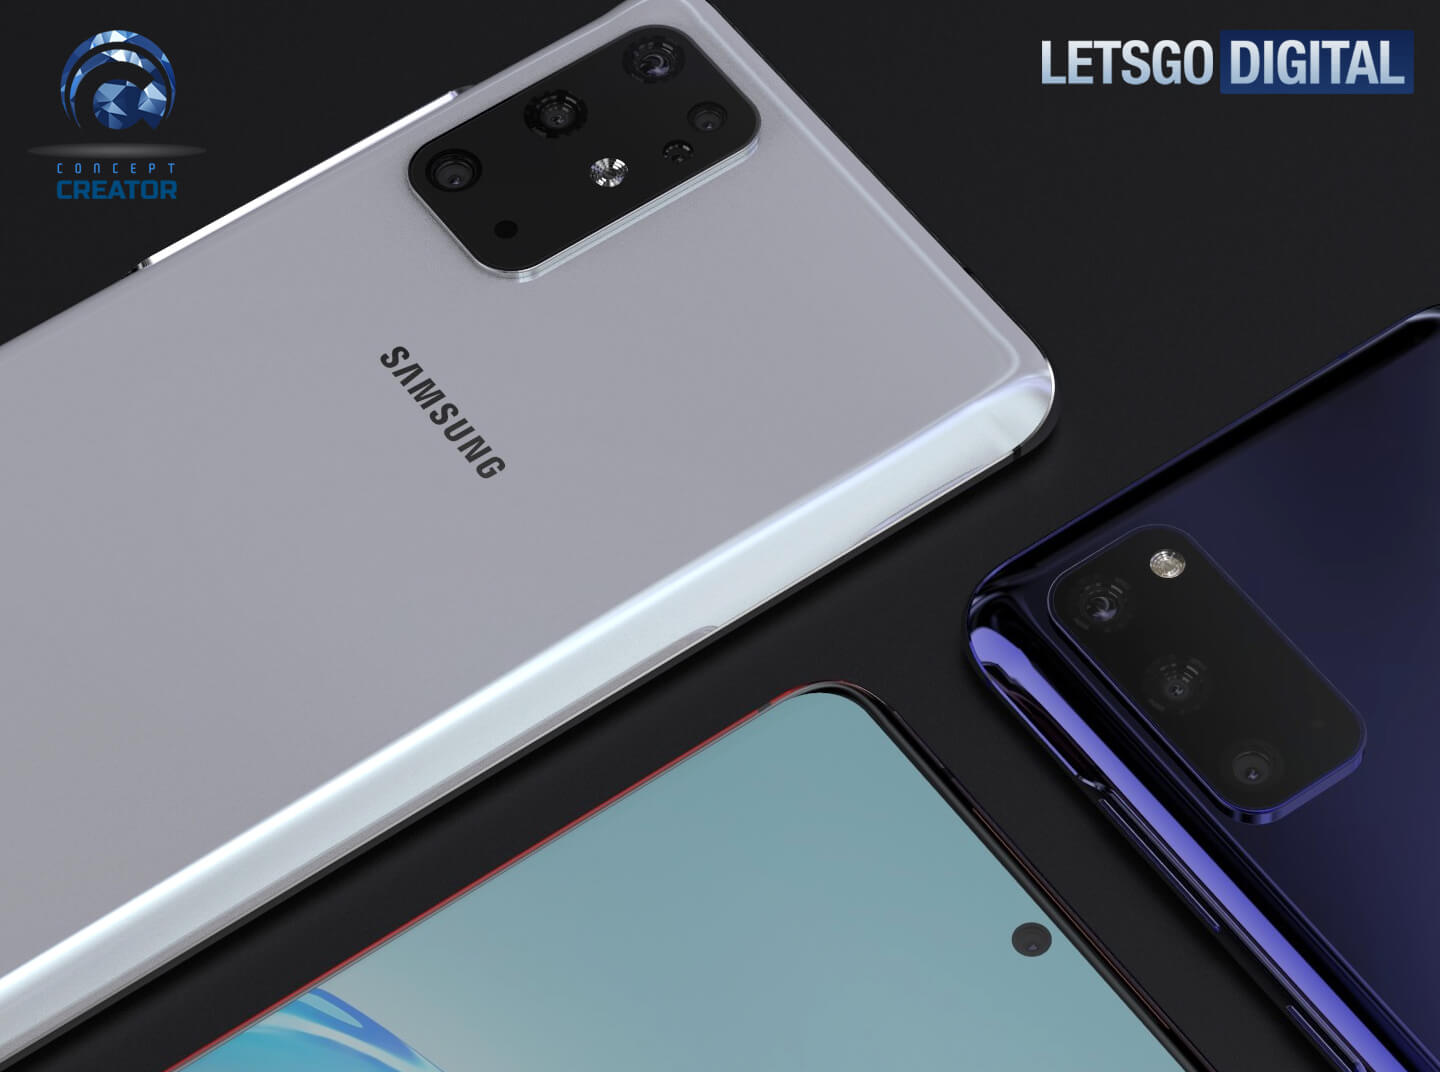 Samsung kamerak Galaxy S20 sorpresarik gabe.  108 megapixel bakarrik S20 Ultra-n
